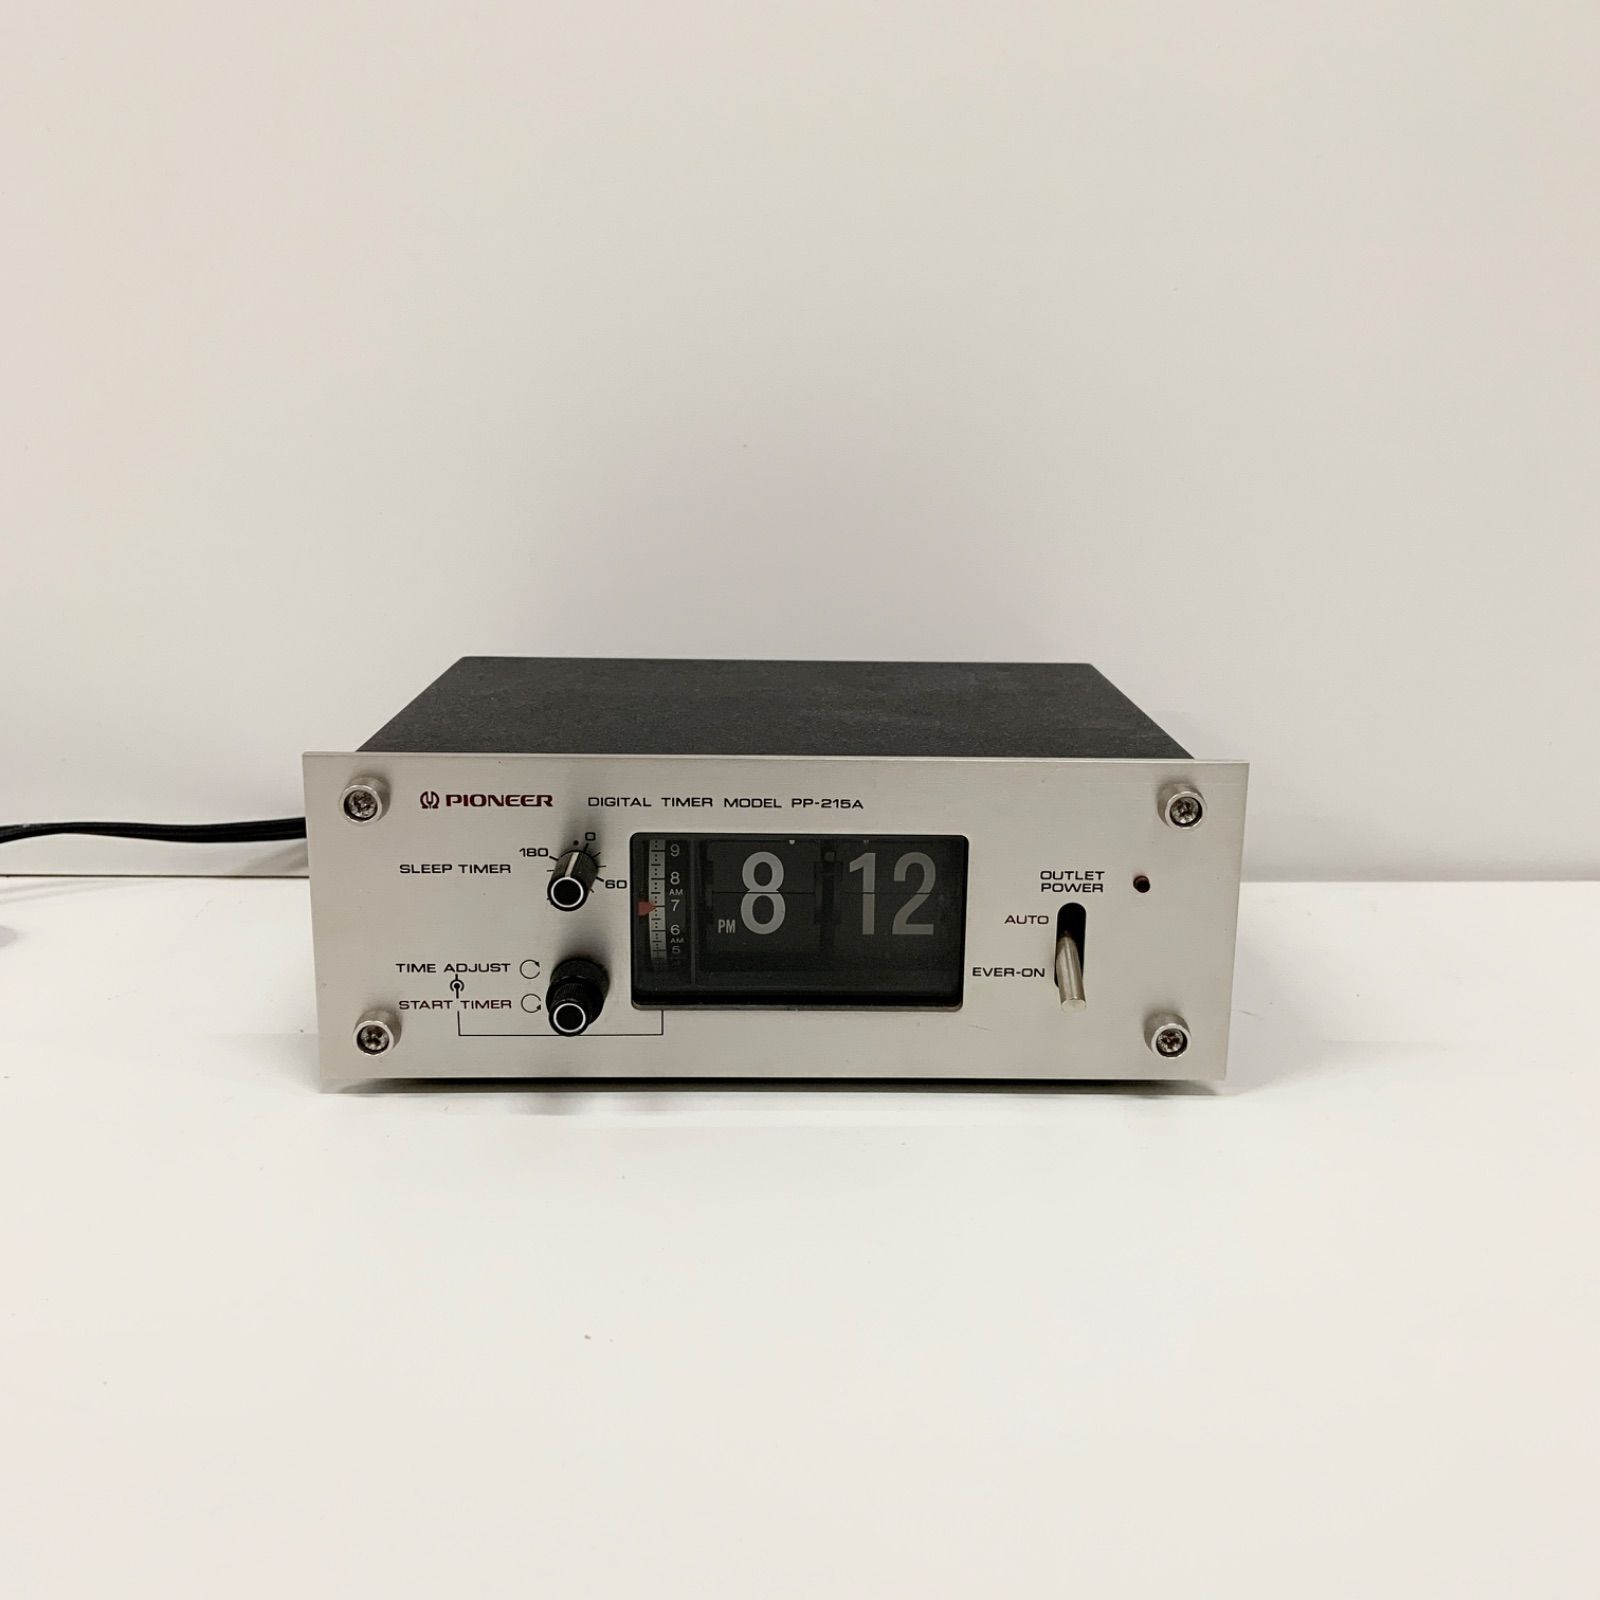 Pioneer PP-215A Digital Timer Model Alarm Flip Clock Vintage Audio Timer tested